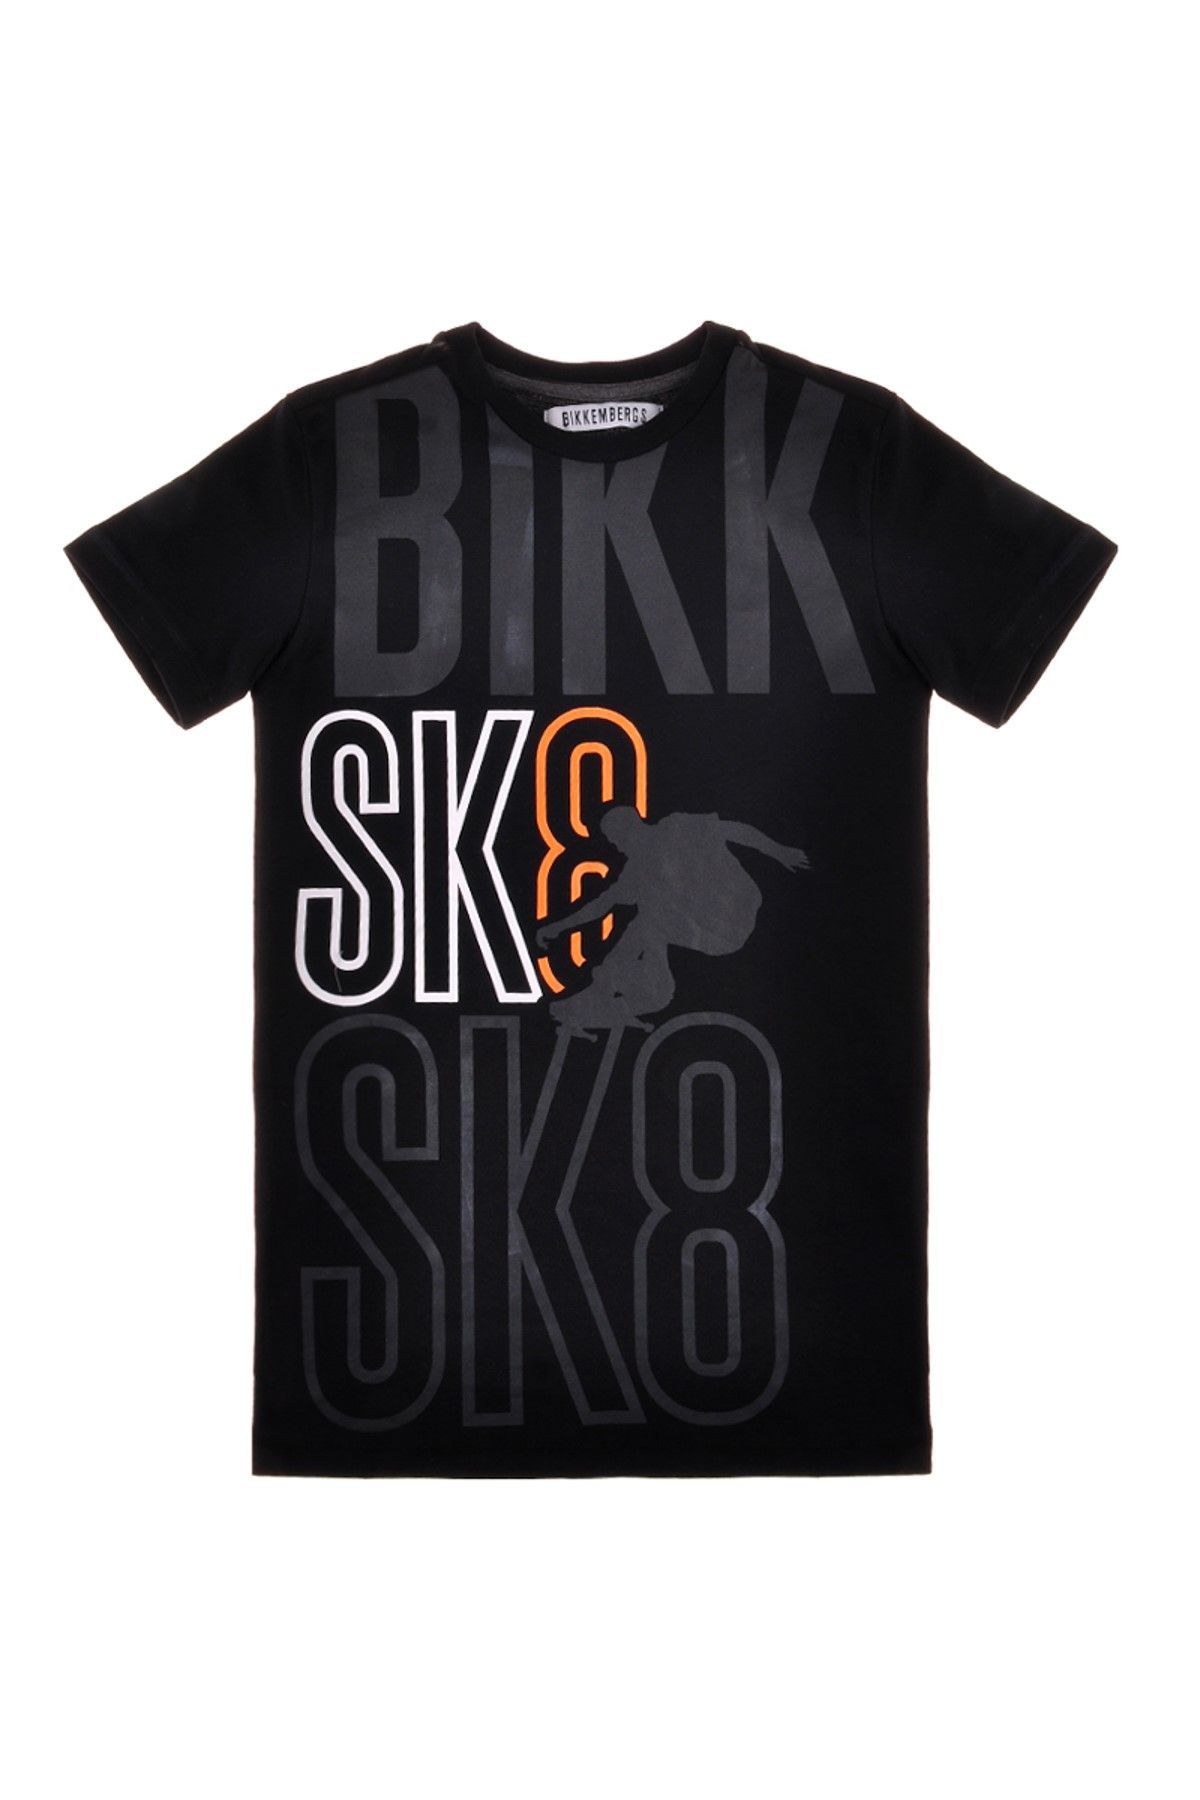 Bikkembergs Siyah Erkek Çocuk T-shirt 3636DJMTE85